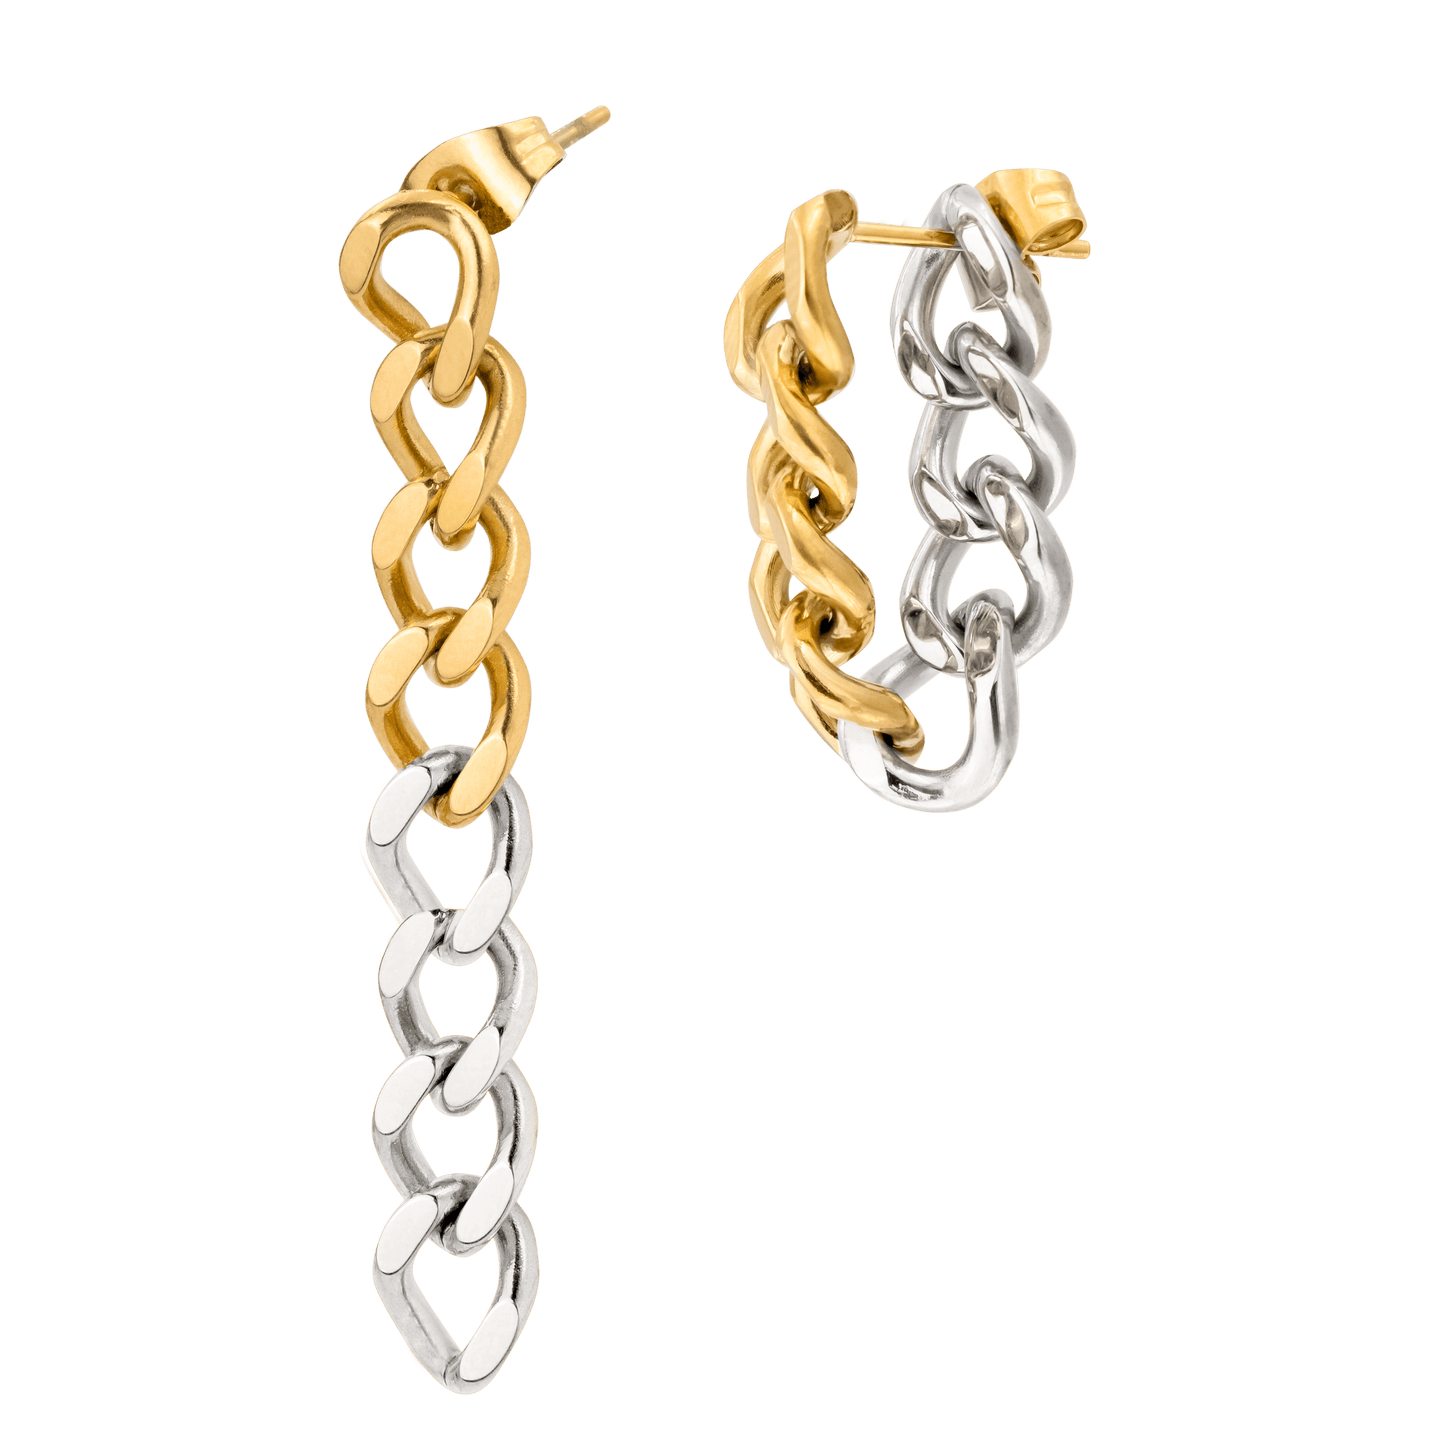 Bi-Colored Chain Earrings